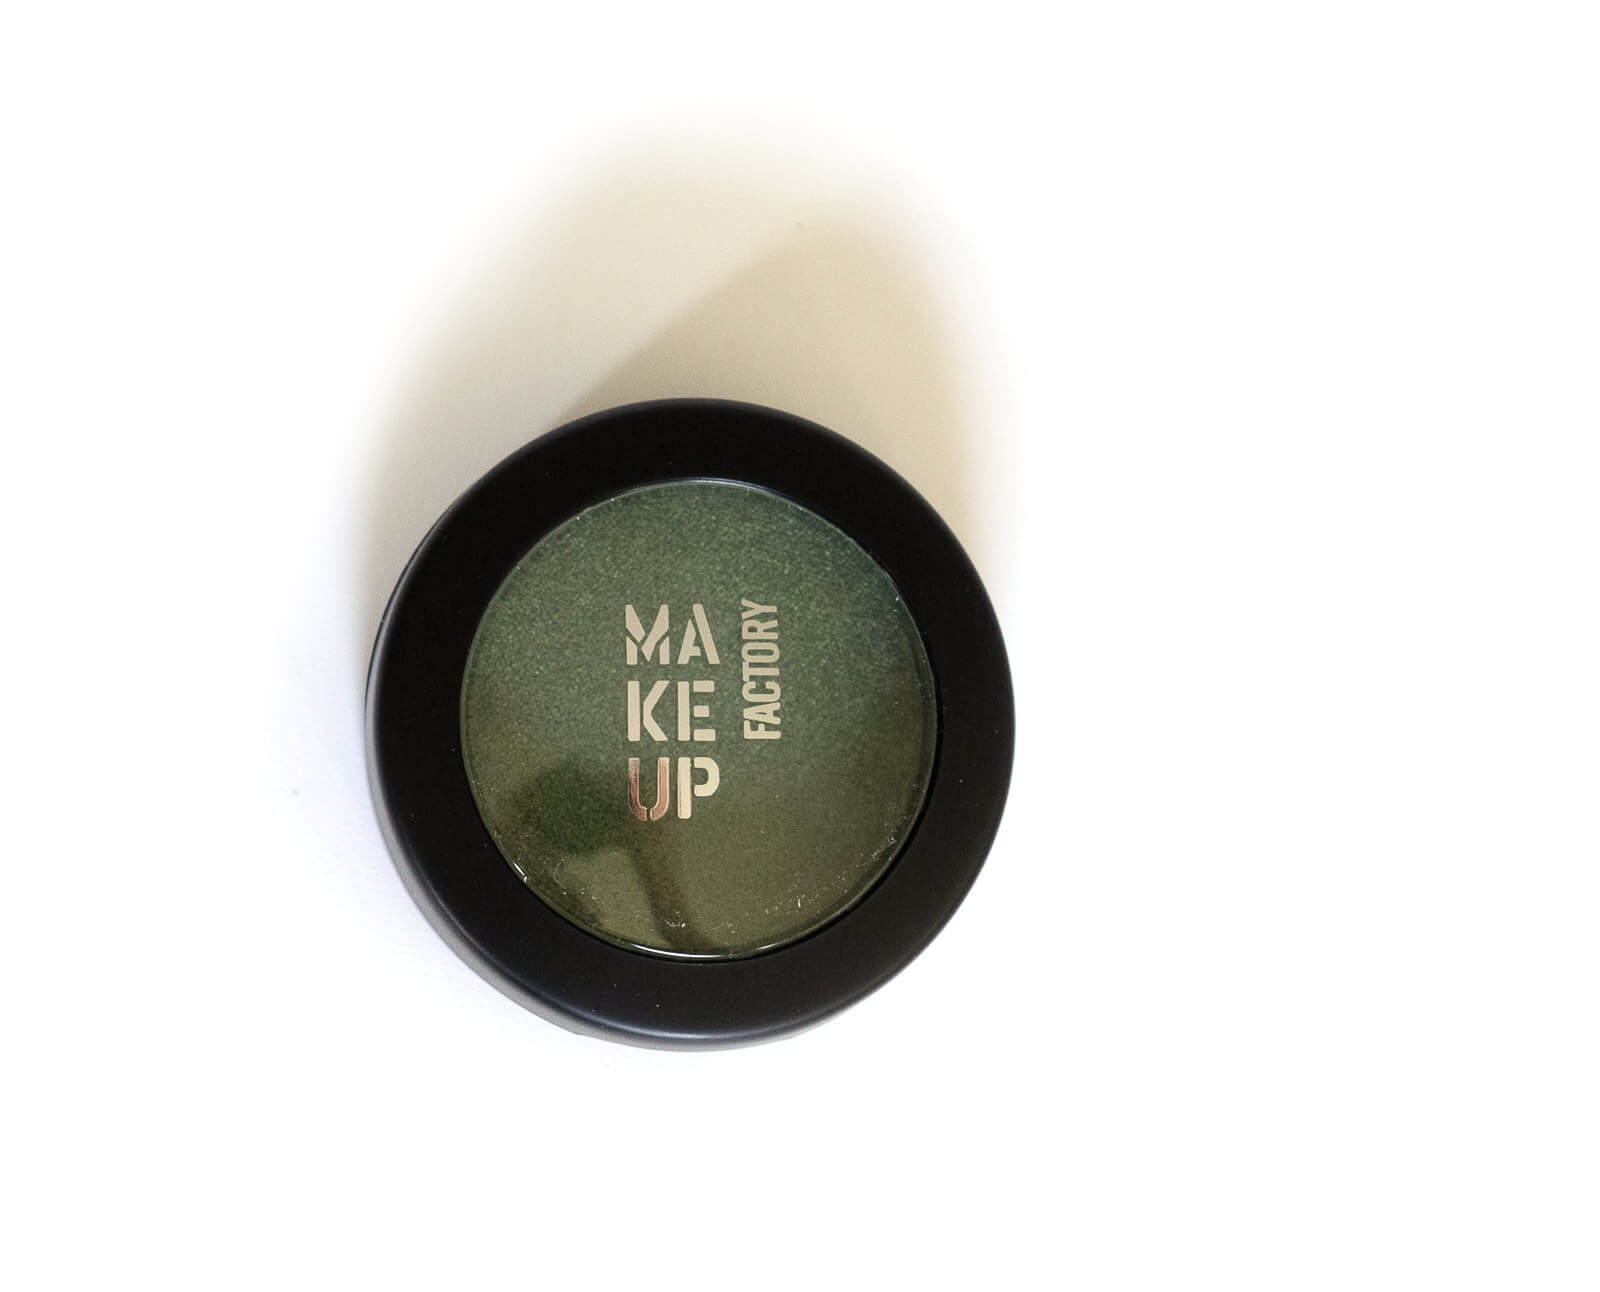 Review - Ein wunderschönes Make-up zaubern mit den Produkten von Make up Factory 45